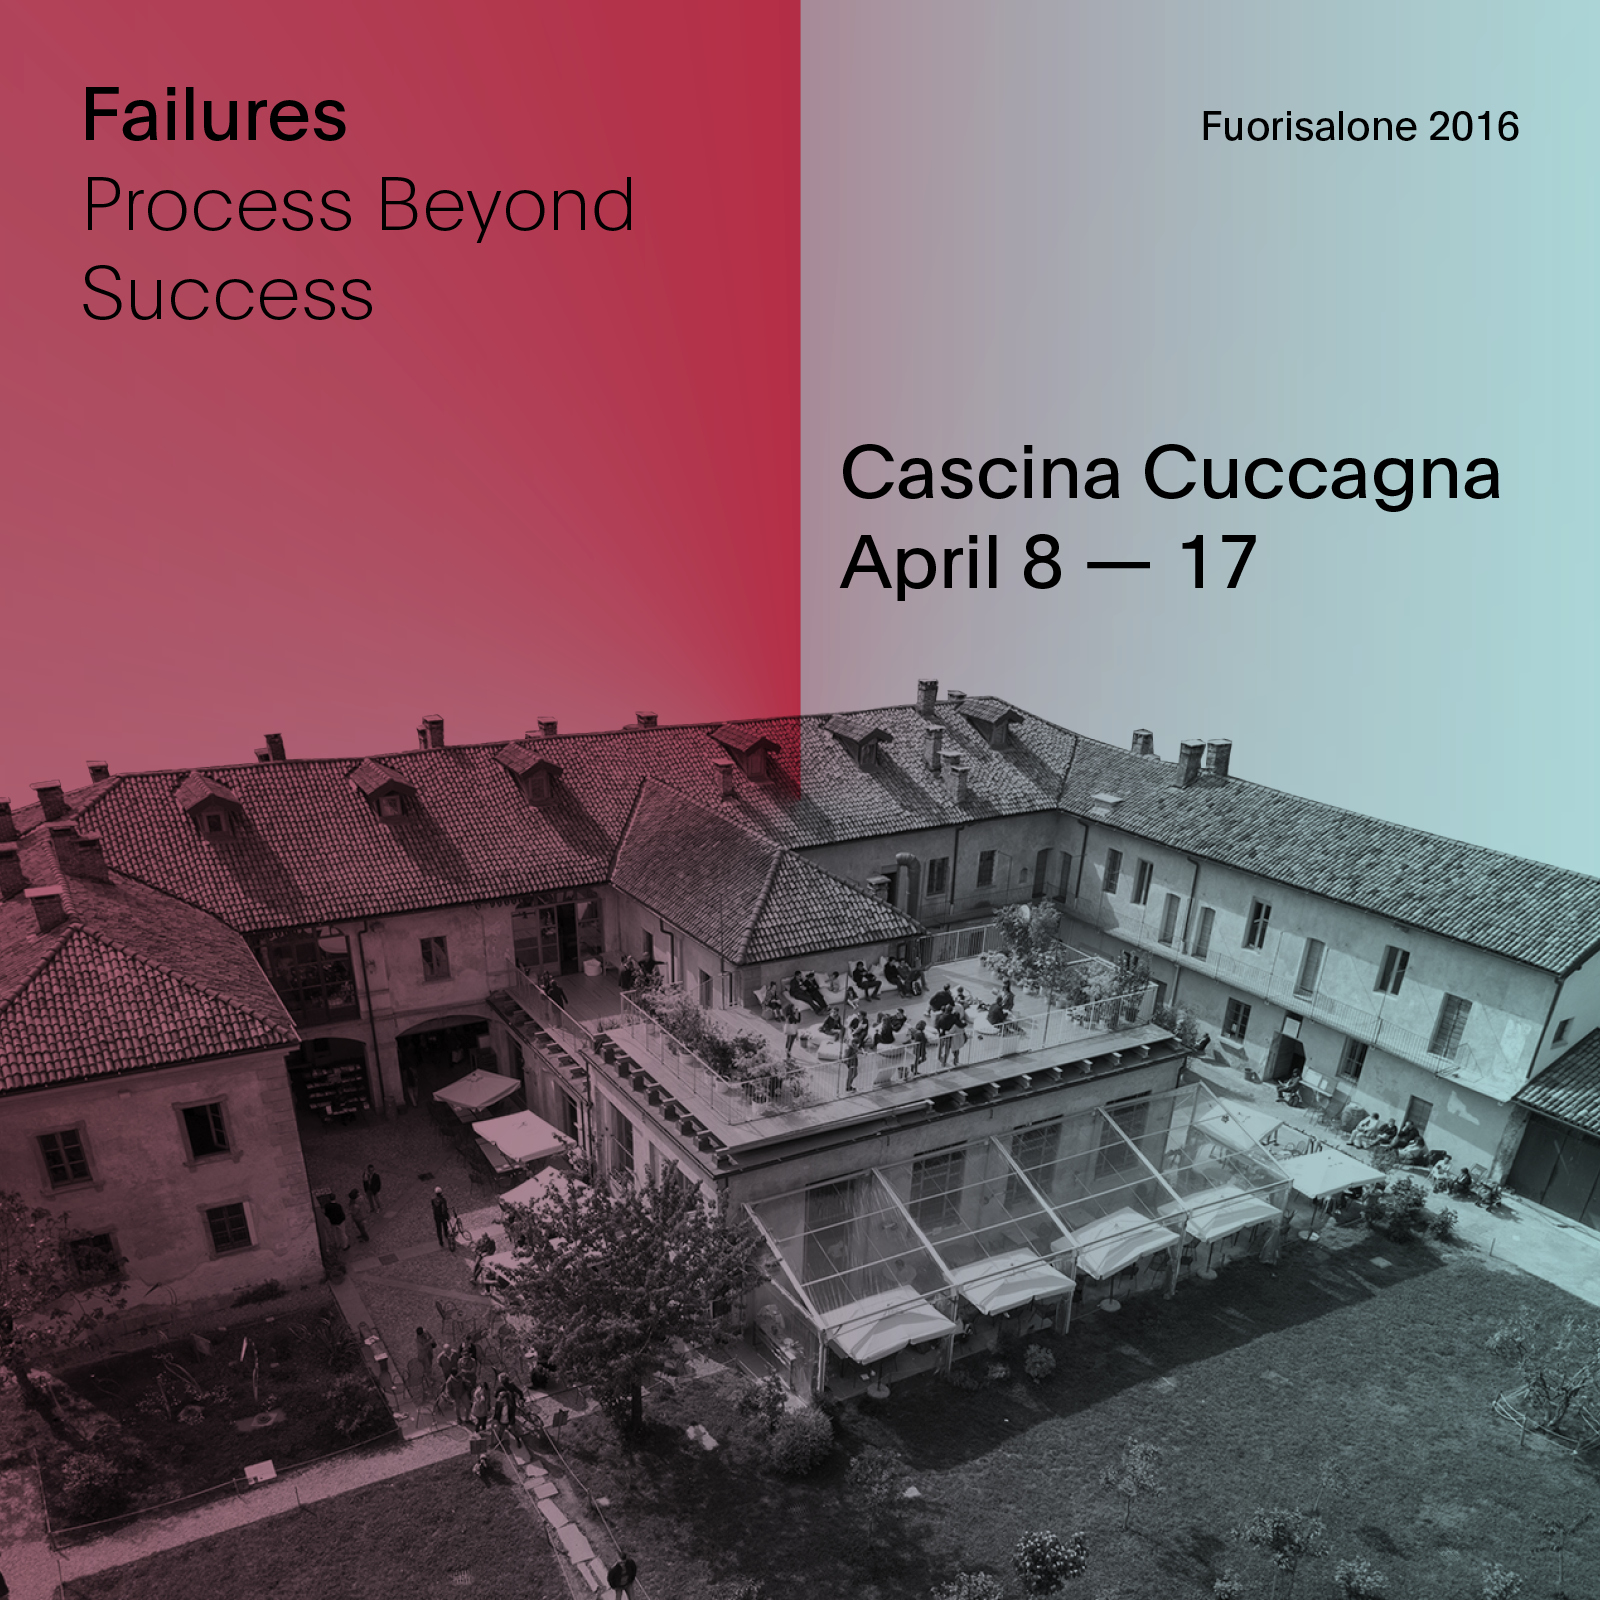 FuoriSalone 2016, Failures l’evento organizzato alla Cascina Cuccagna